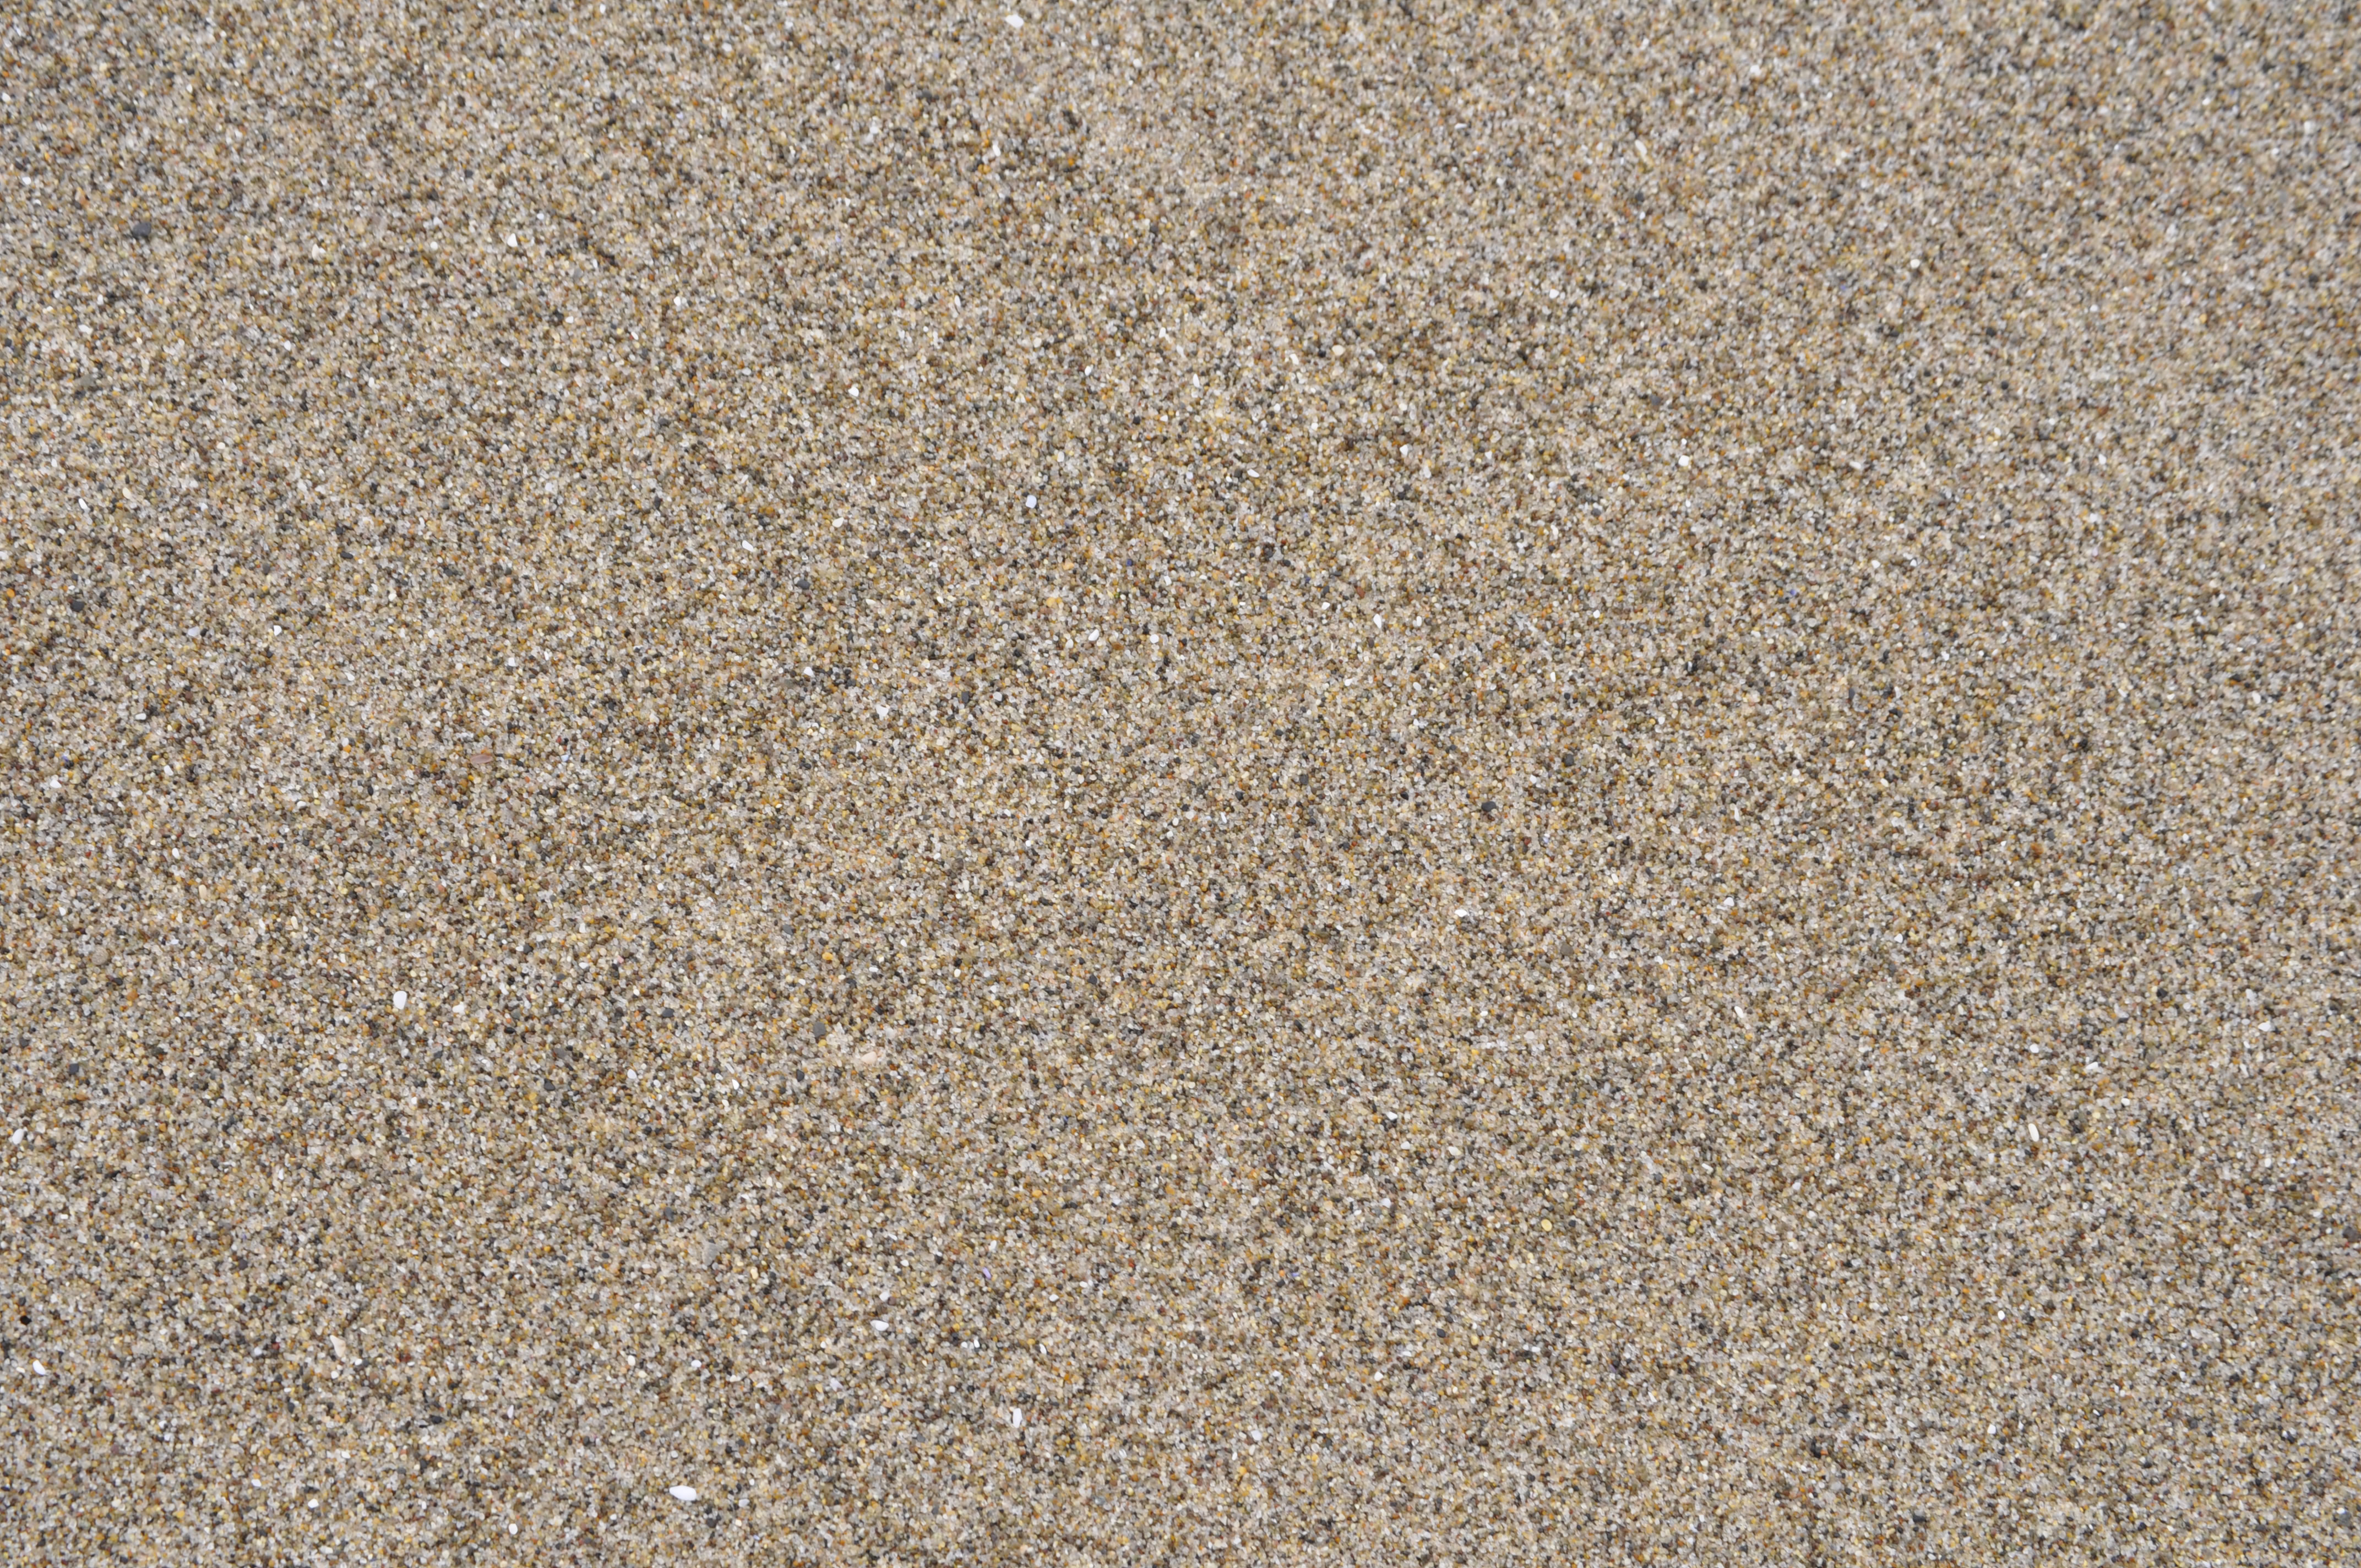 sand texture, песок, текстура песка, пляж, фон, background, скачать фото, песочек